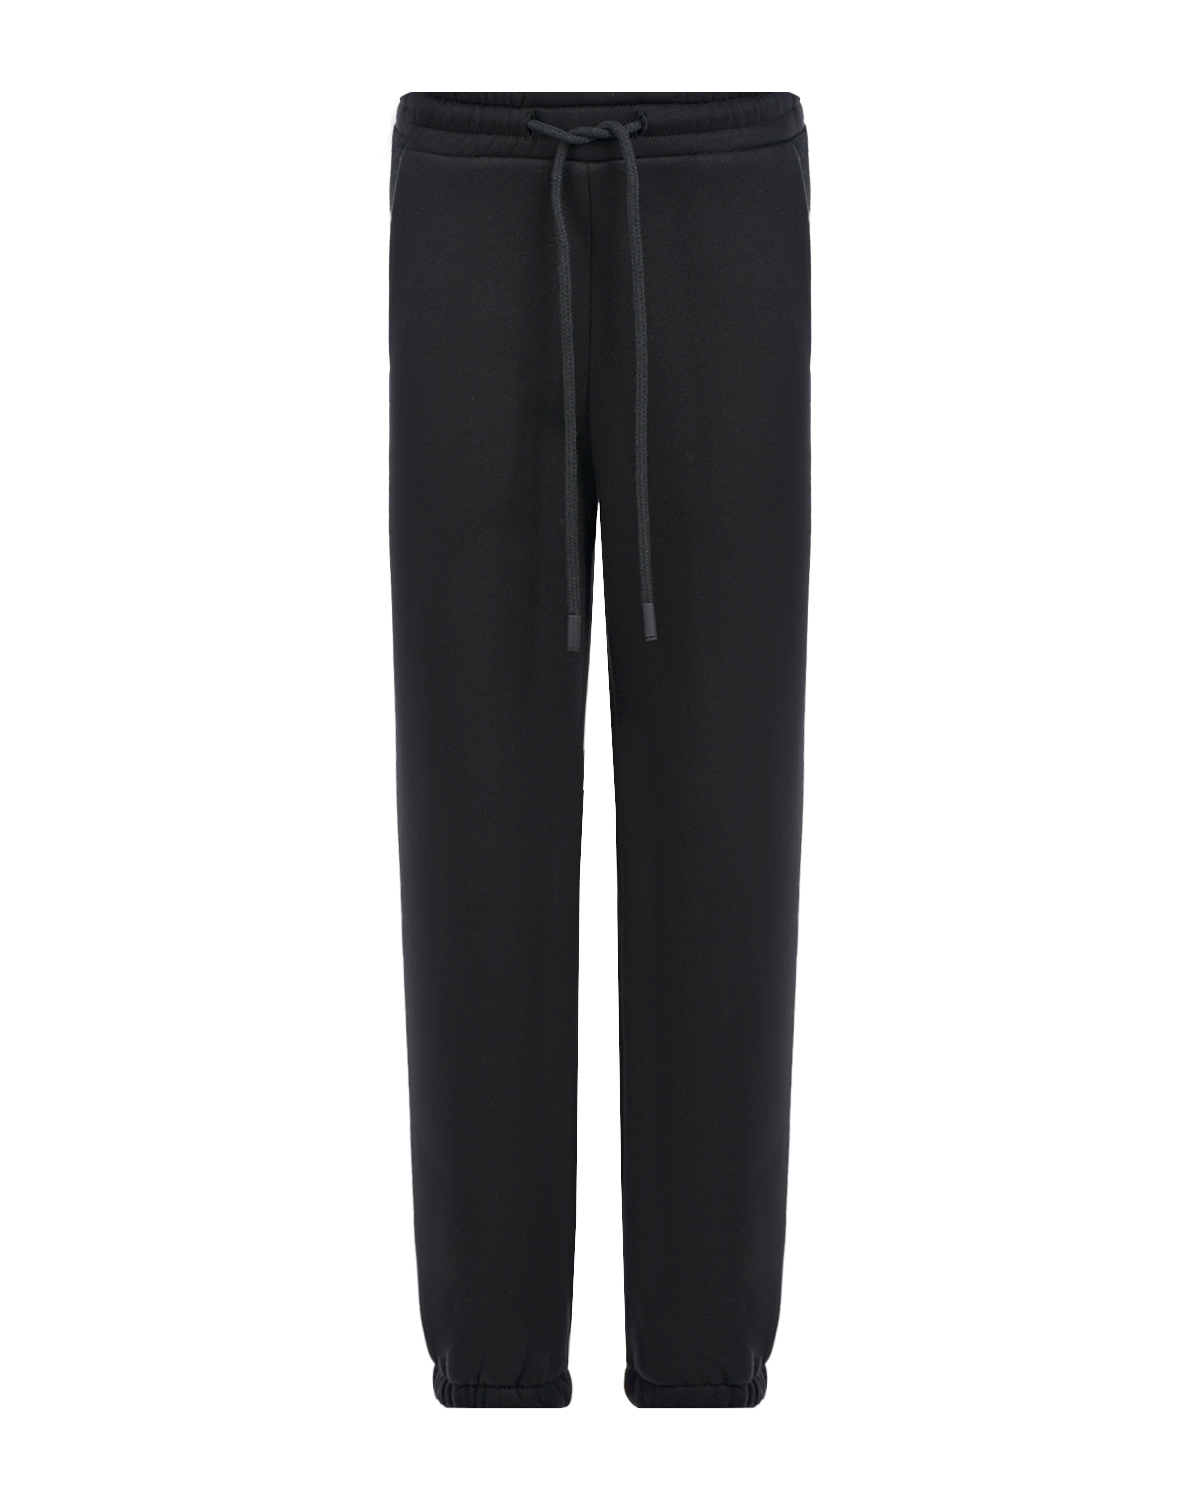 Черные утепленные спортивные брюки Dan Maralex детские, размер 128, цвет черный - фото 1